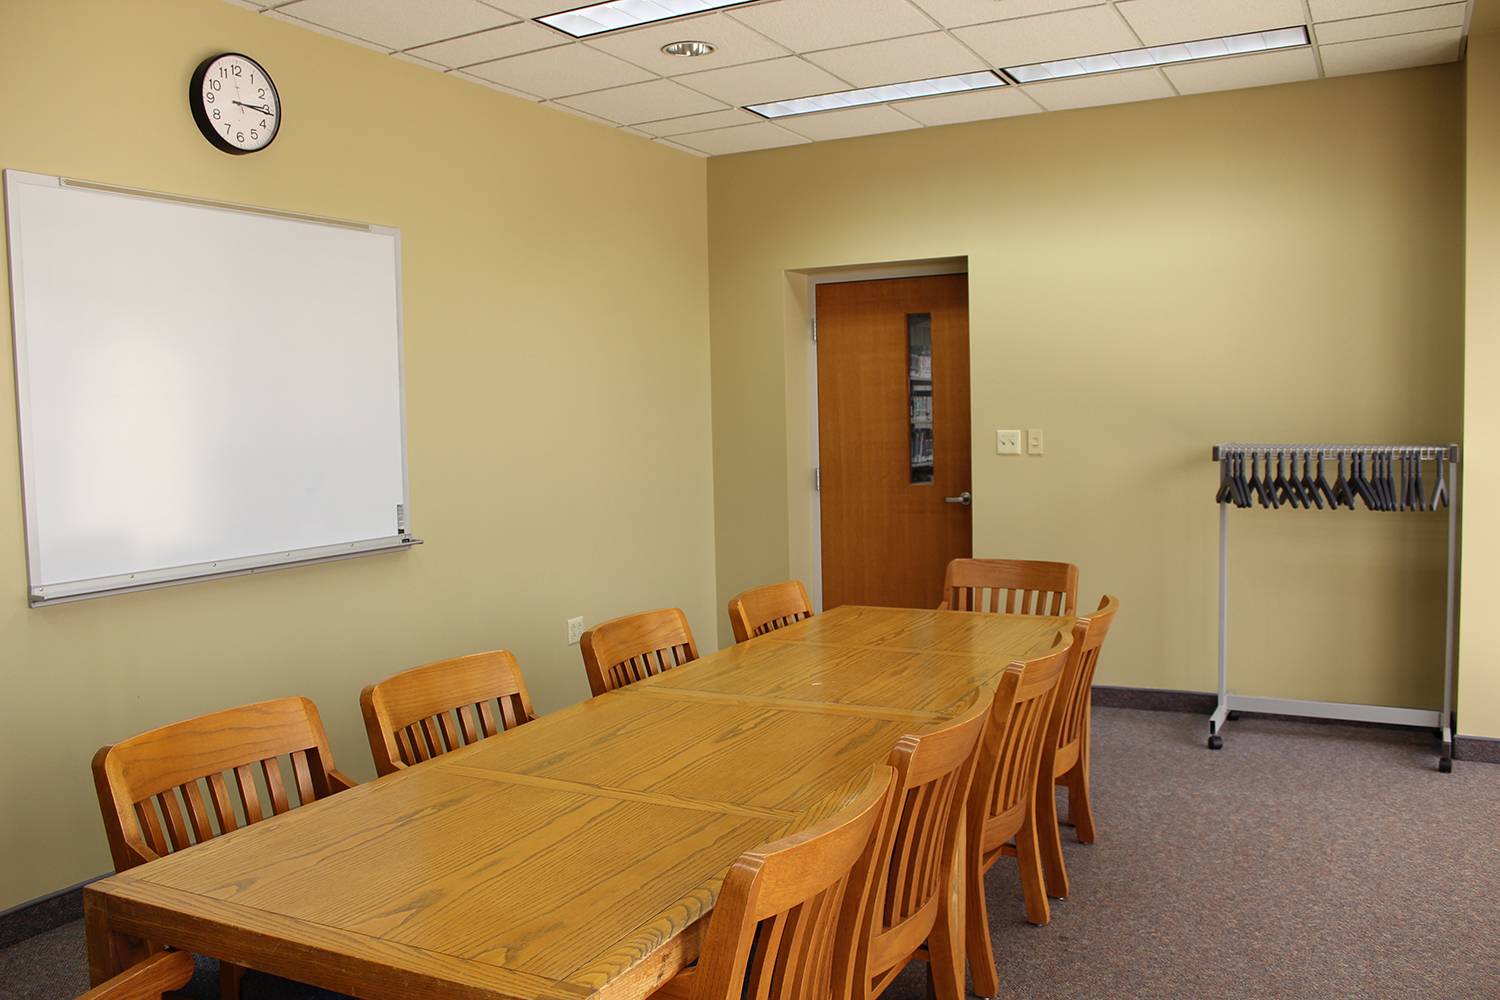 Meeting Room 214